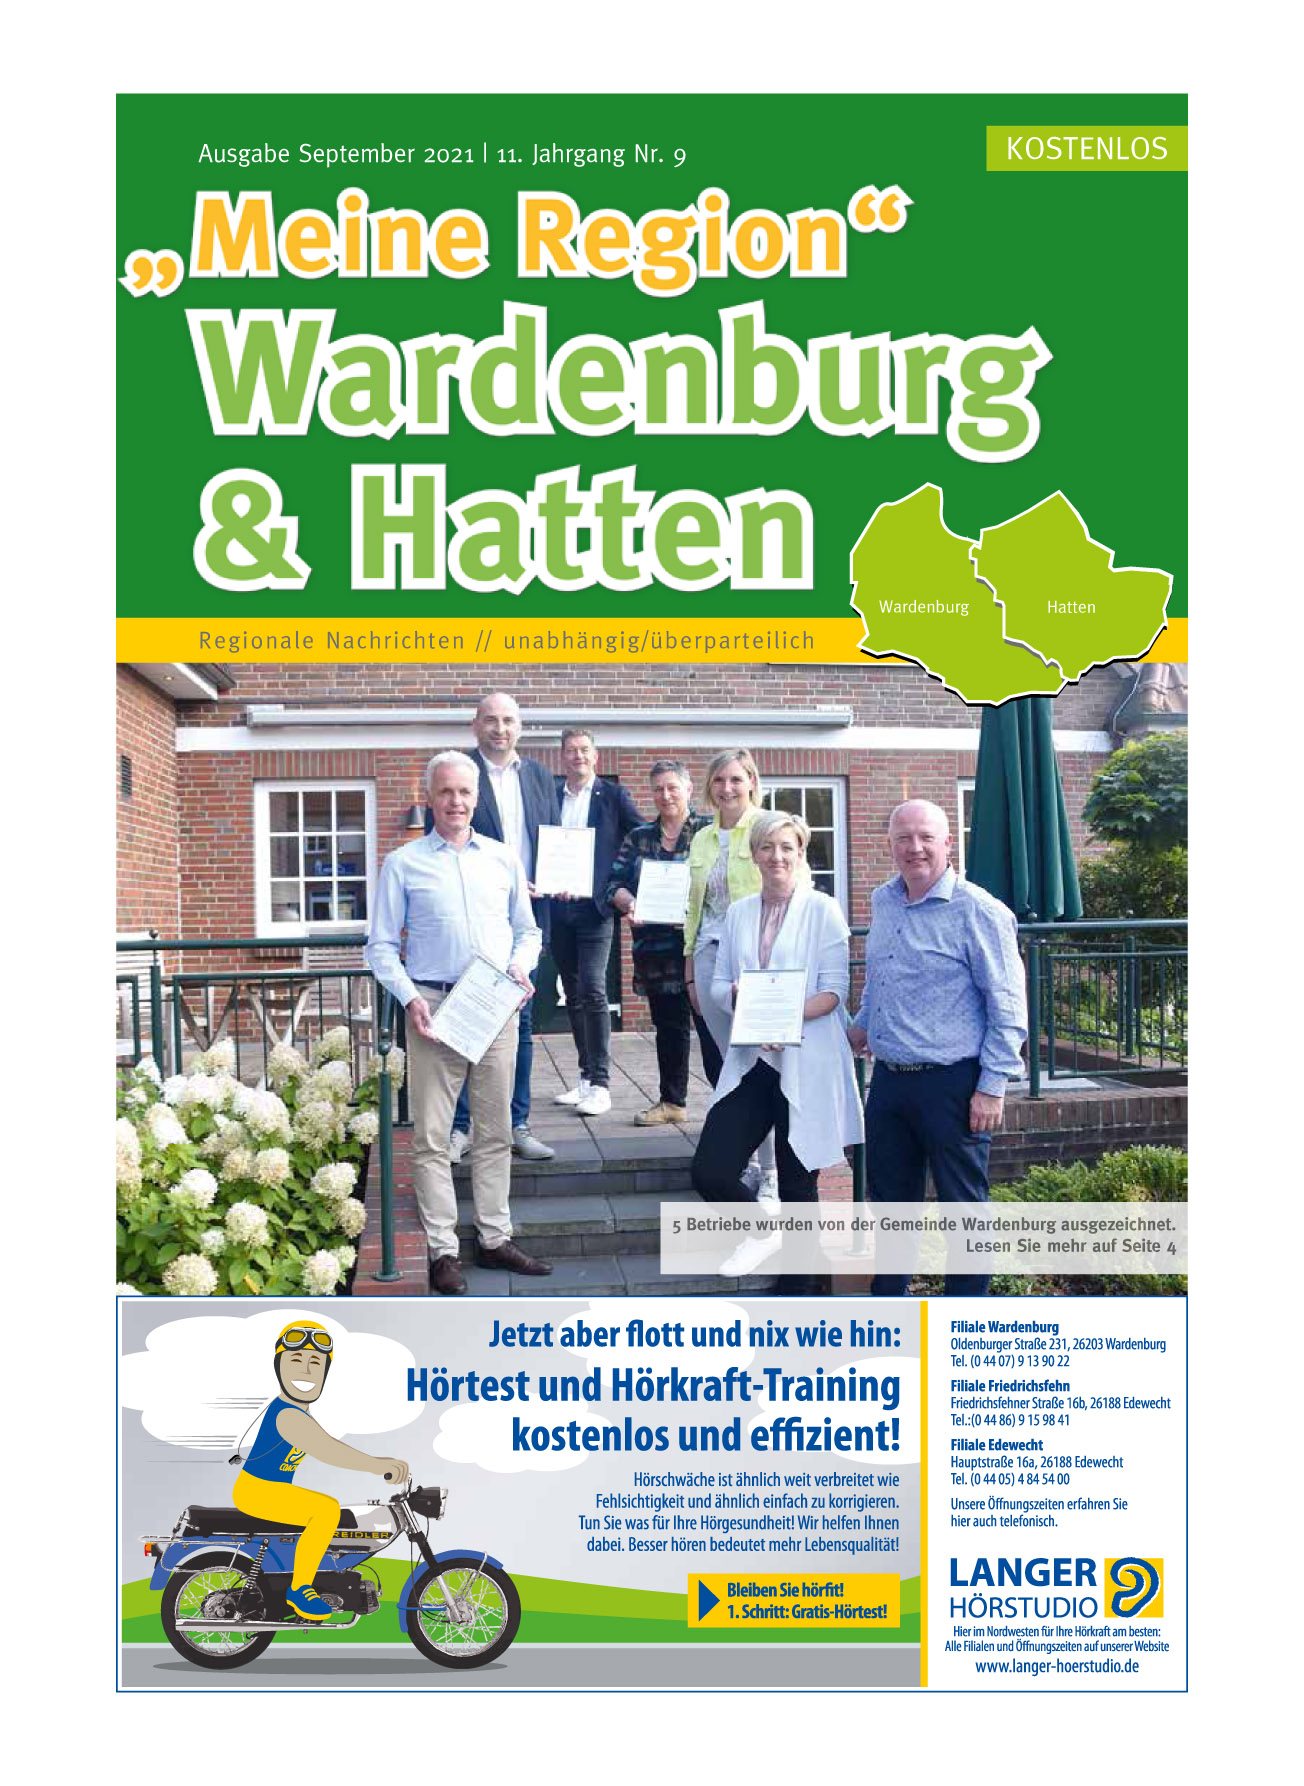 Meine Region Wardenburg & Hatten - kostenlose Zeitung www.meineregion-verlag.de